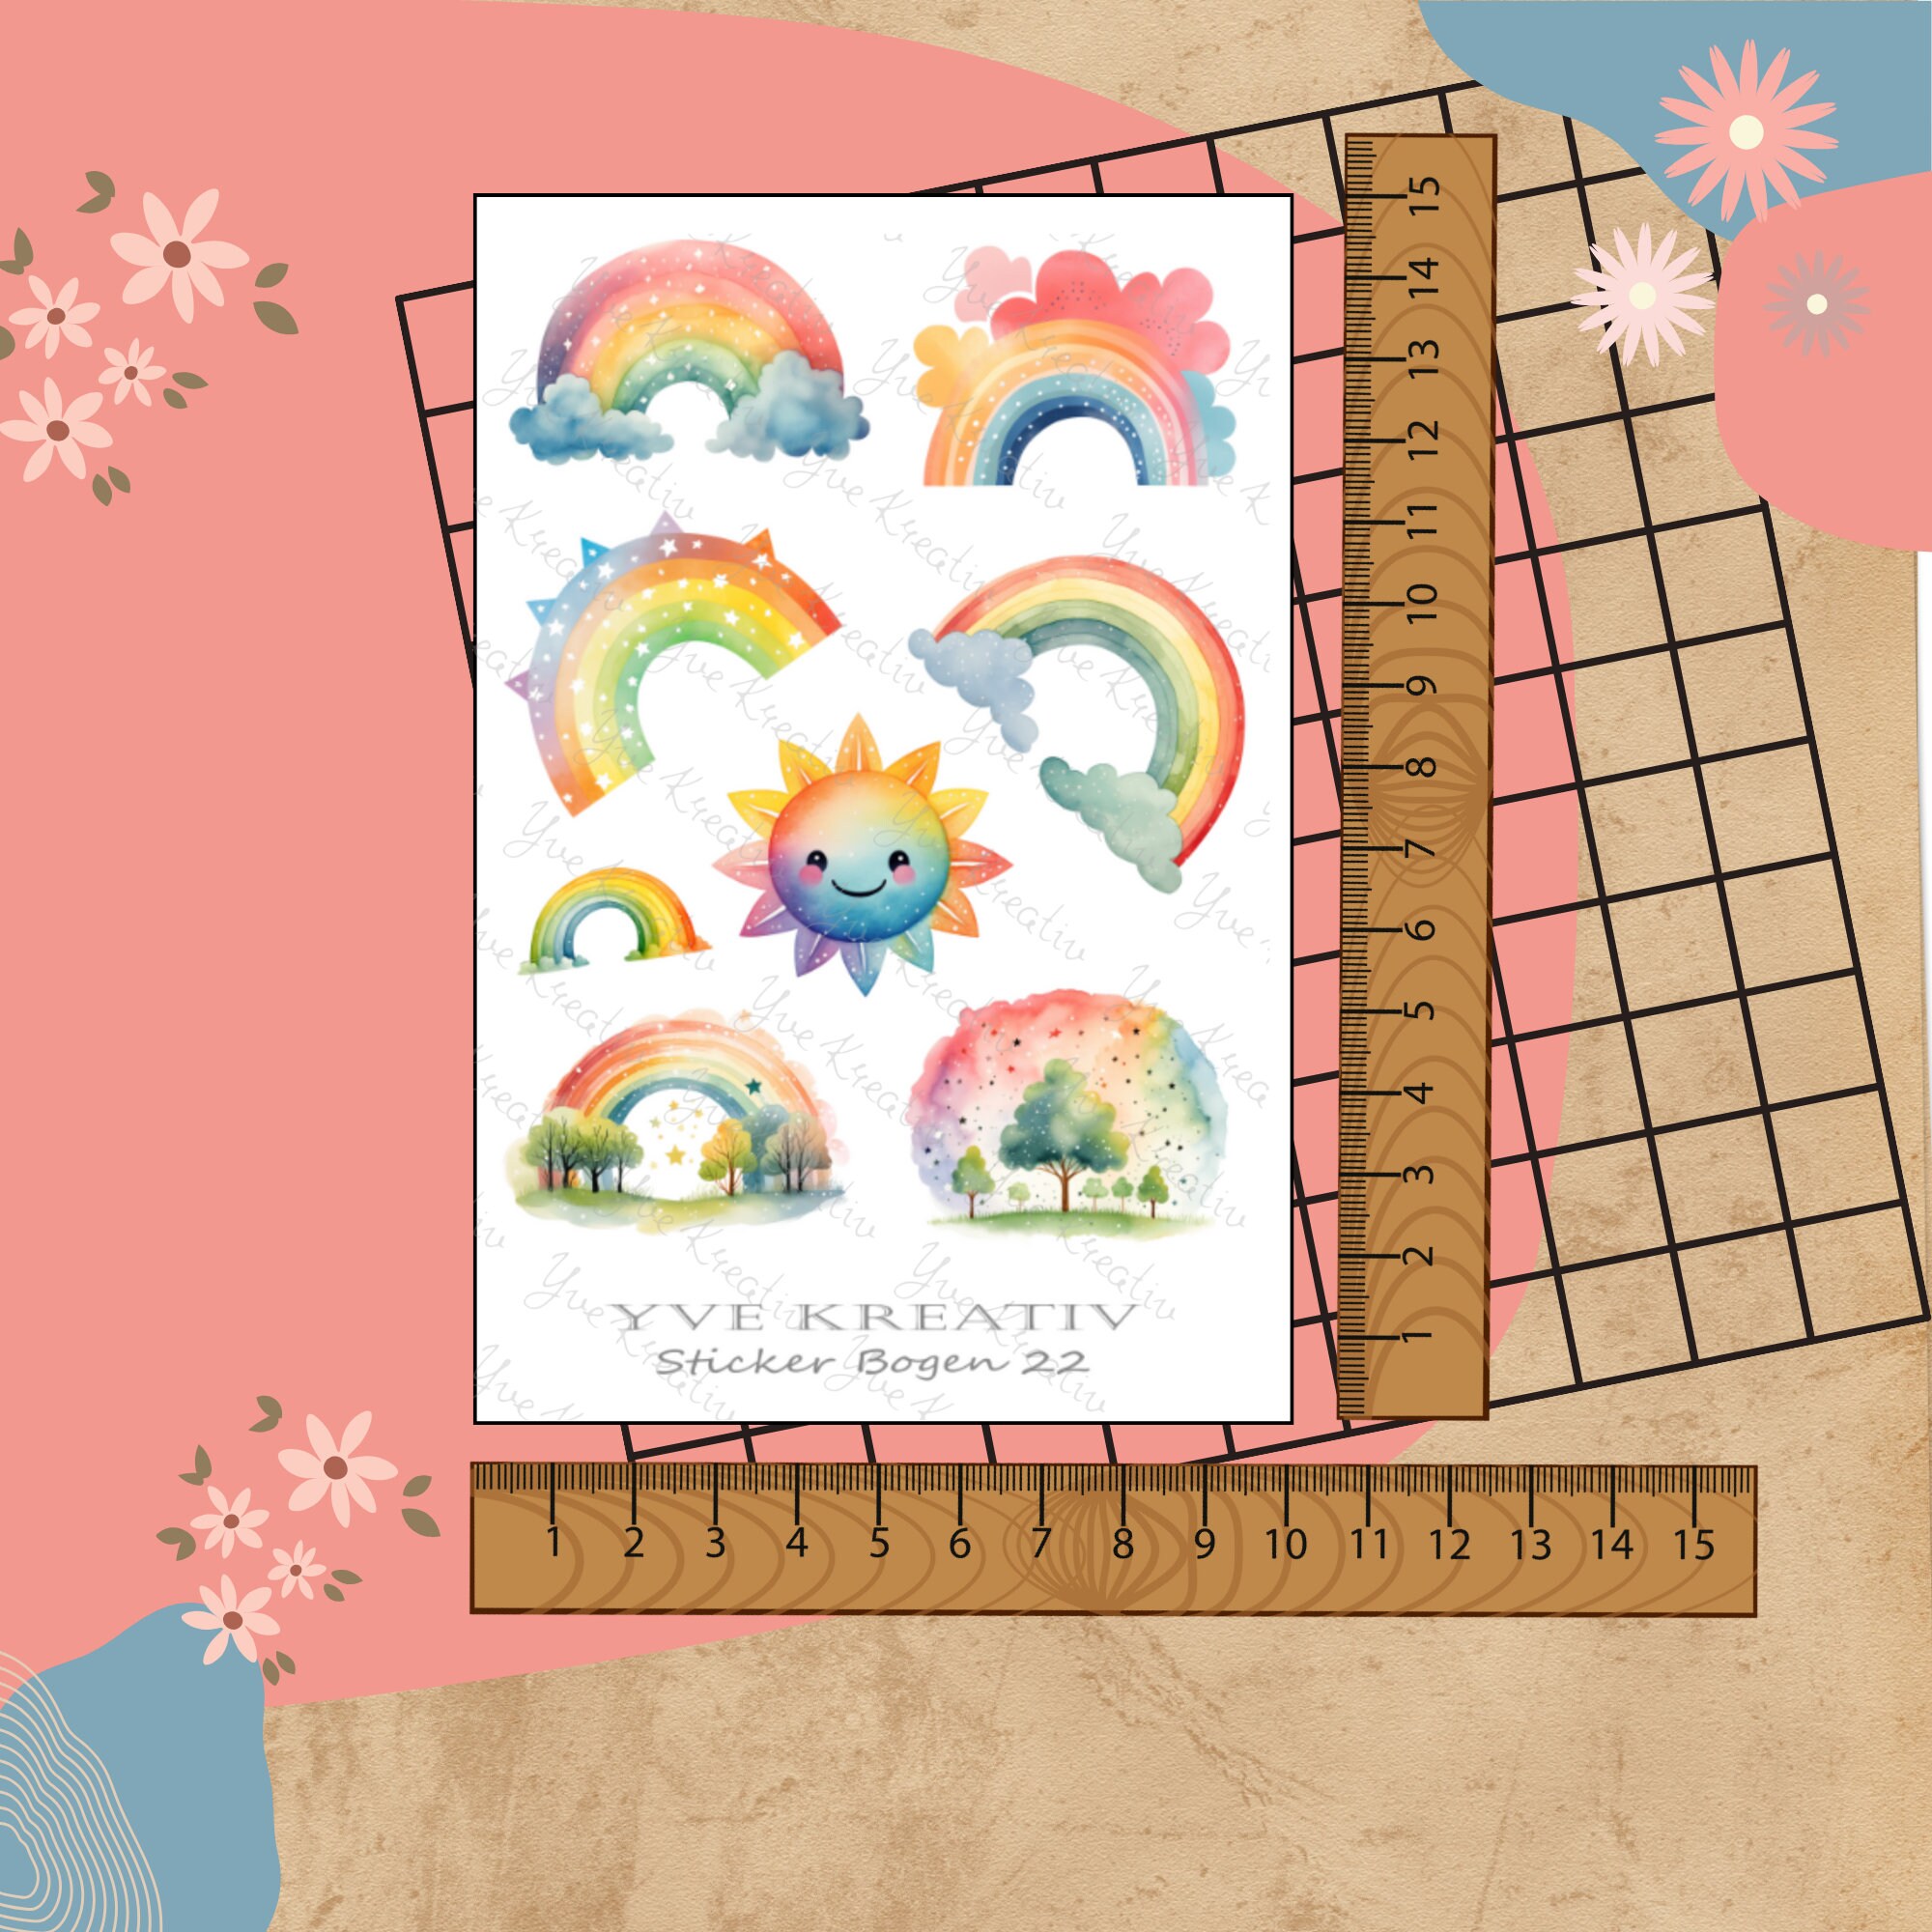 Sticker Bogen " Regenbogen kunterbunt" | Sticker Set - Aufkleber 3 Stickerbogen zur Auswahl in Weiß - Transparent - Matt - Glanz